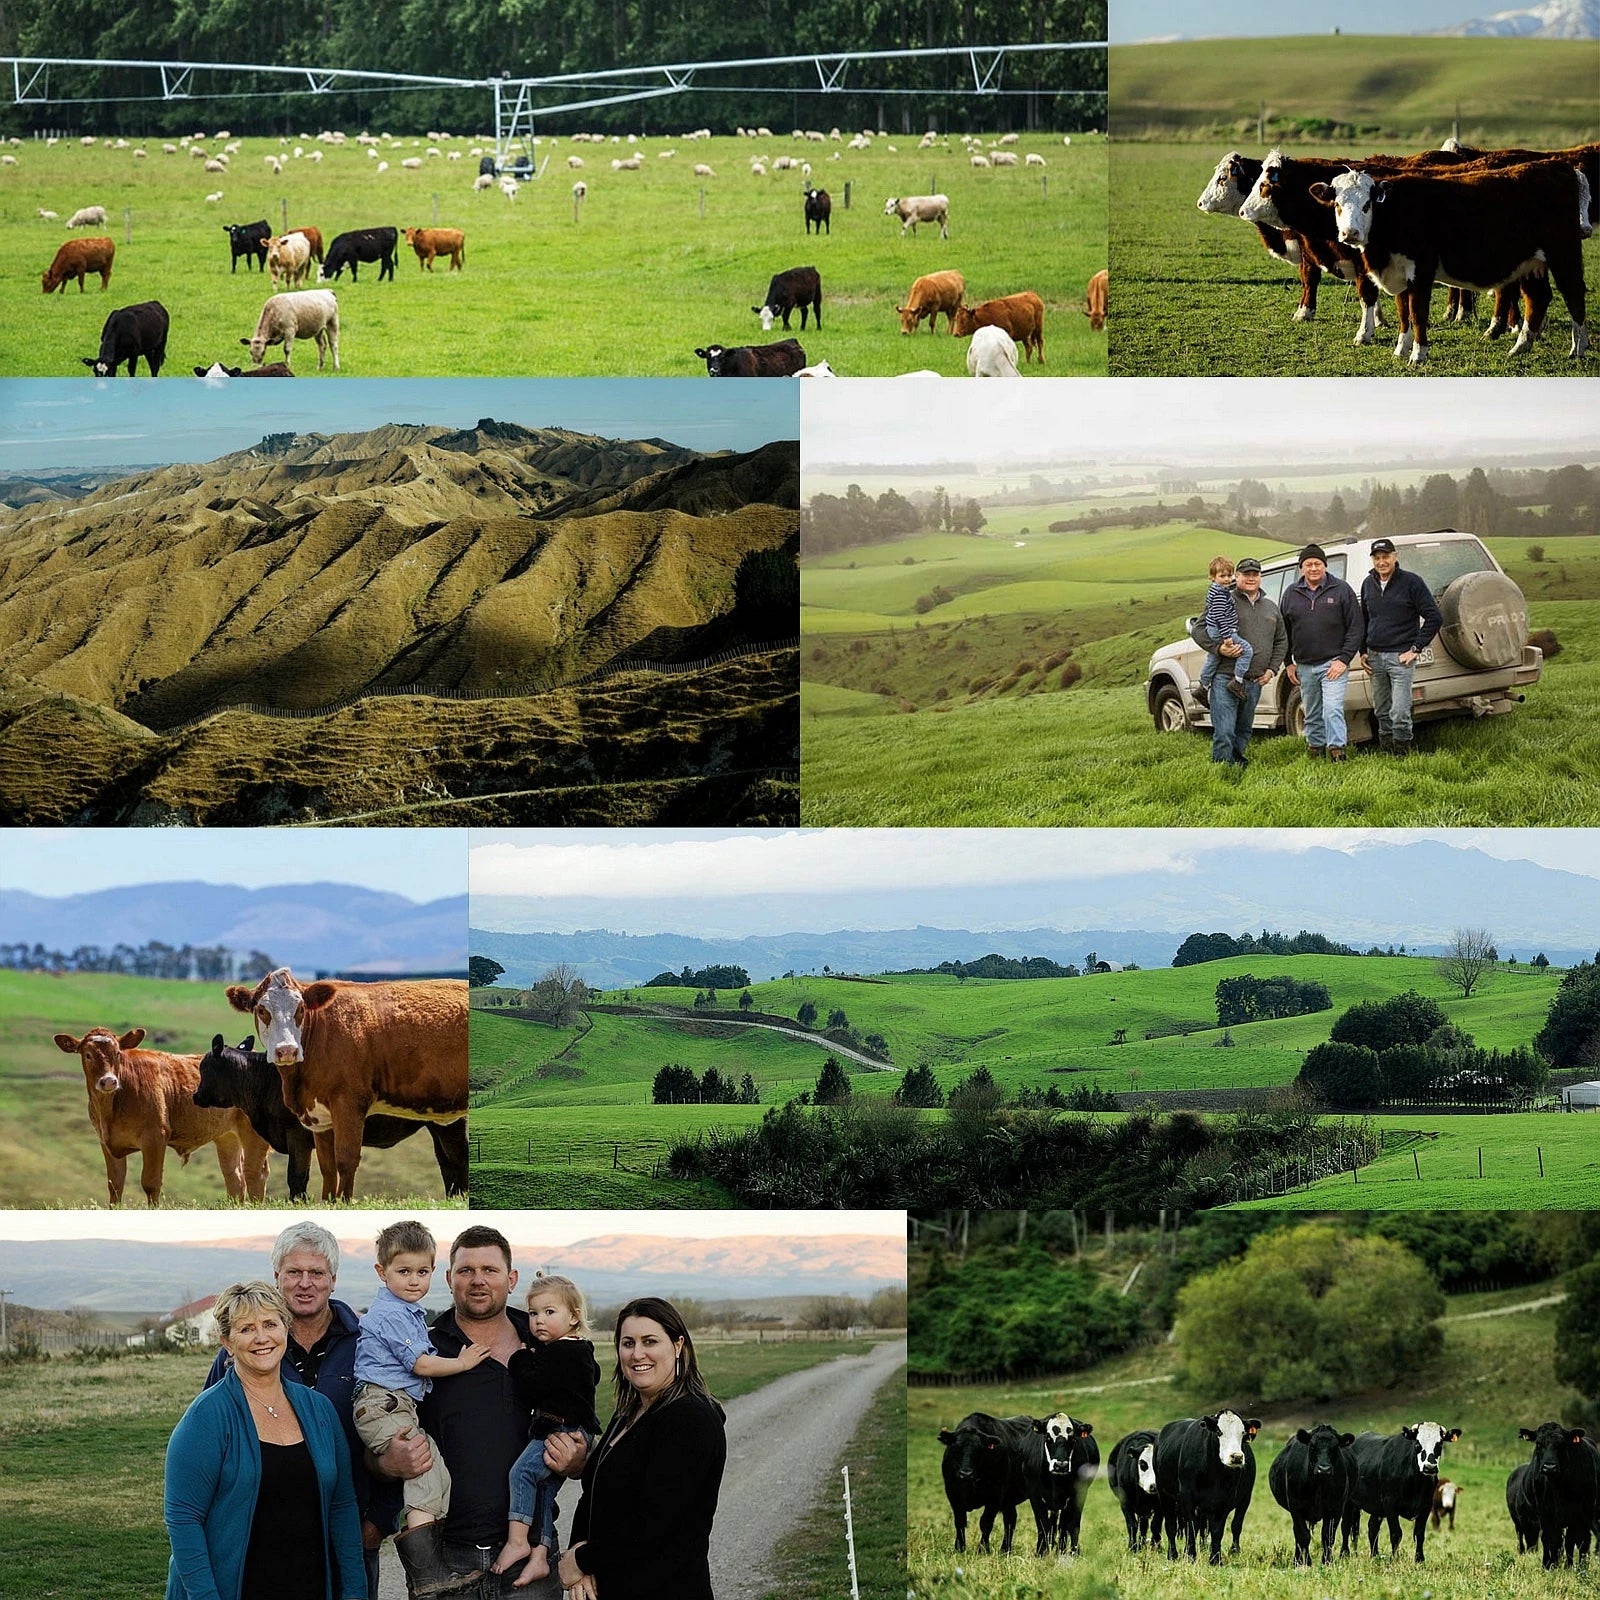 グラスフェッドビーフ 赤身 牛肉 ステーキ ウワミスジ 希少部位 ニュージーランド産 牧草牛 (200g) ホライズンファームズ